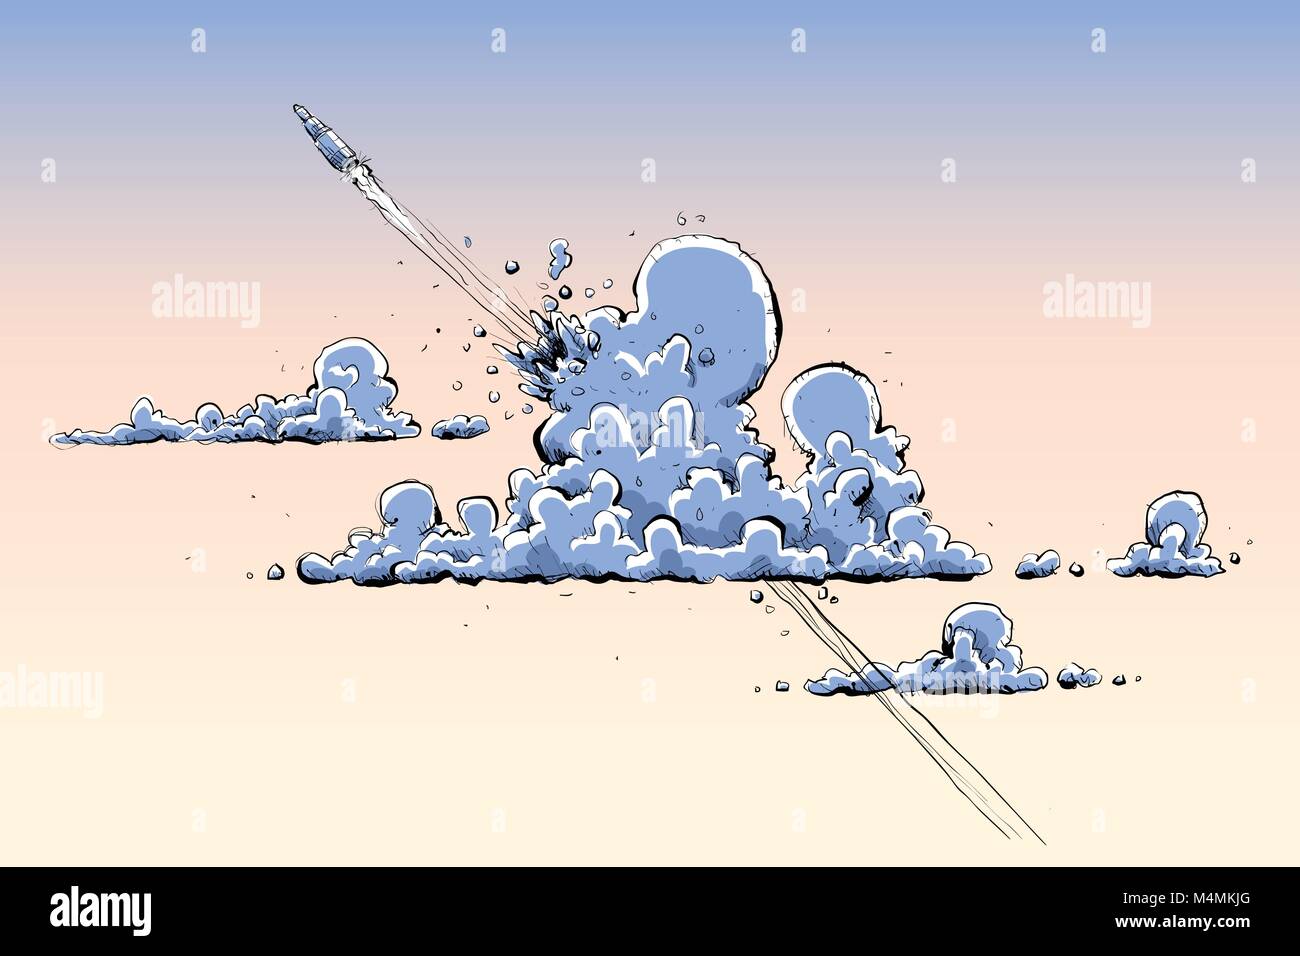 Lancio di un razzo cartoon vola attraverso le nuvole. Illustrazione Vettoriale